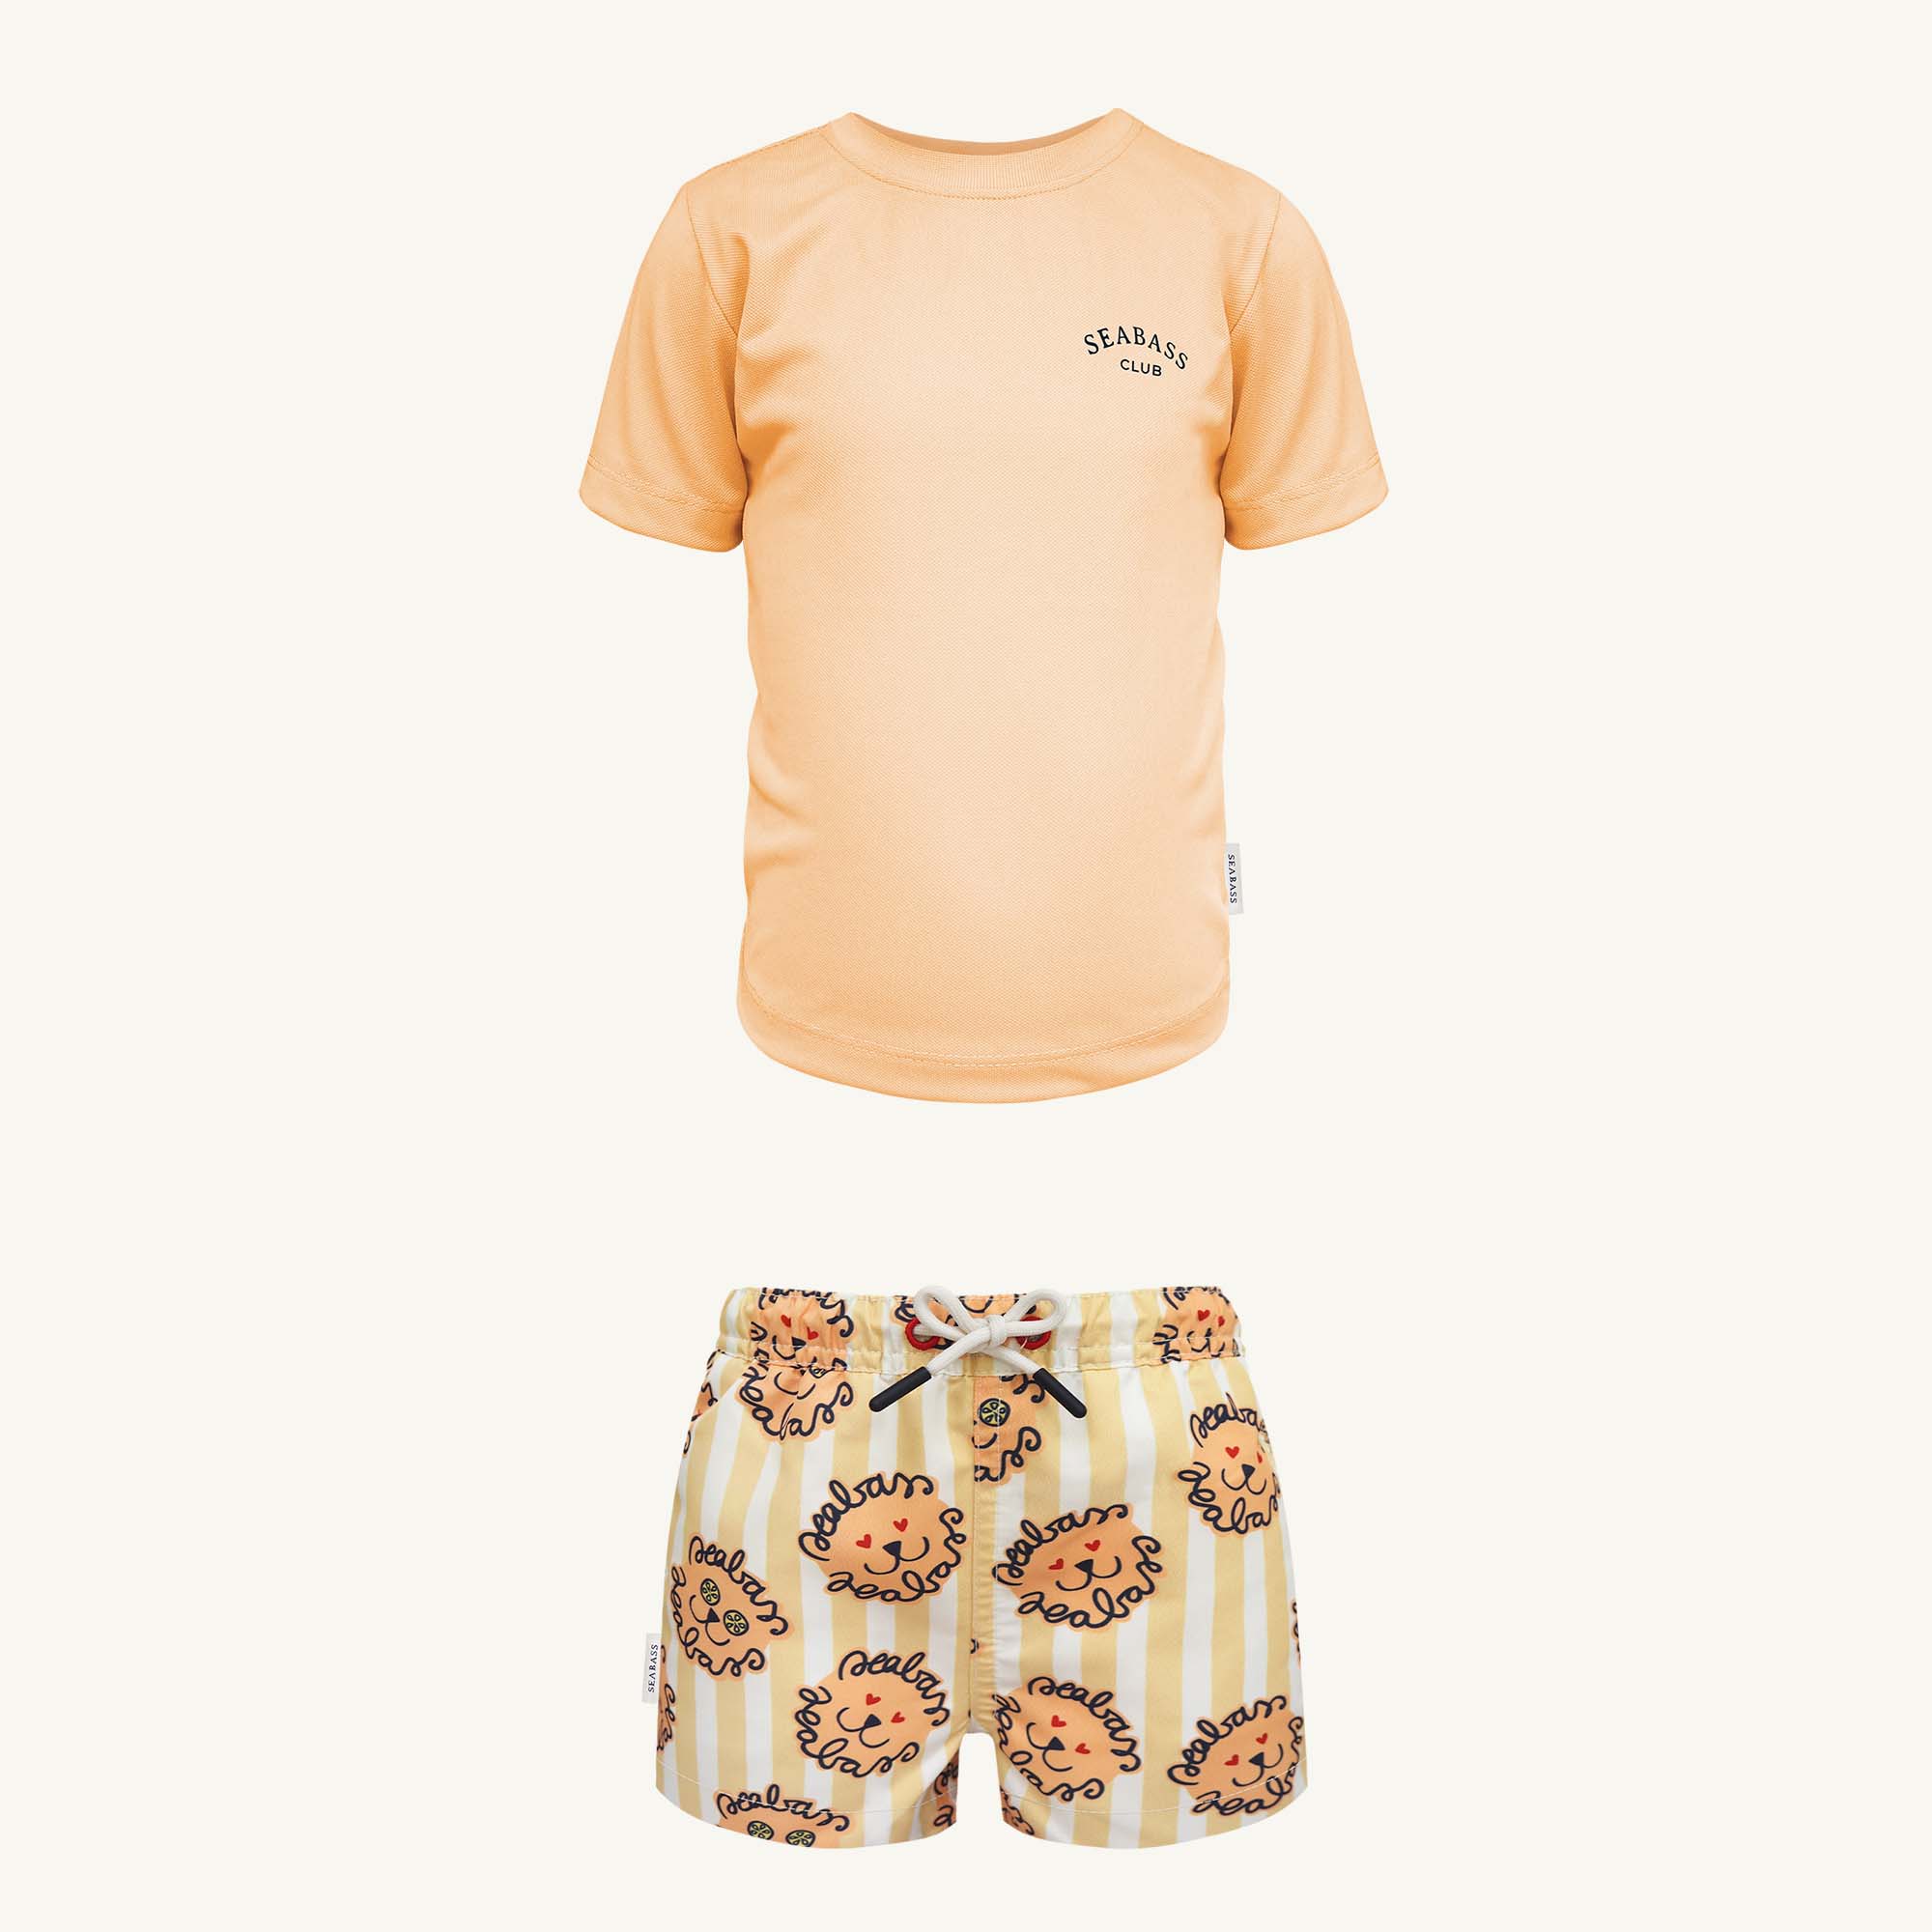 Conjunto de baño UV - Bañador Leone y Camiseta Cantaloupe